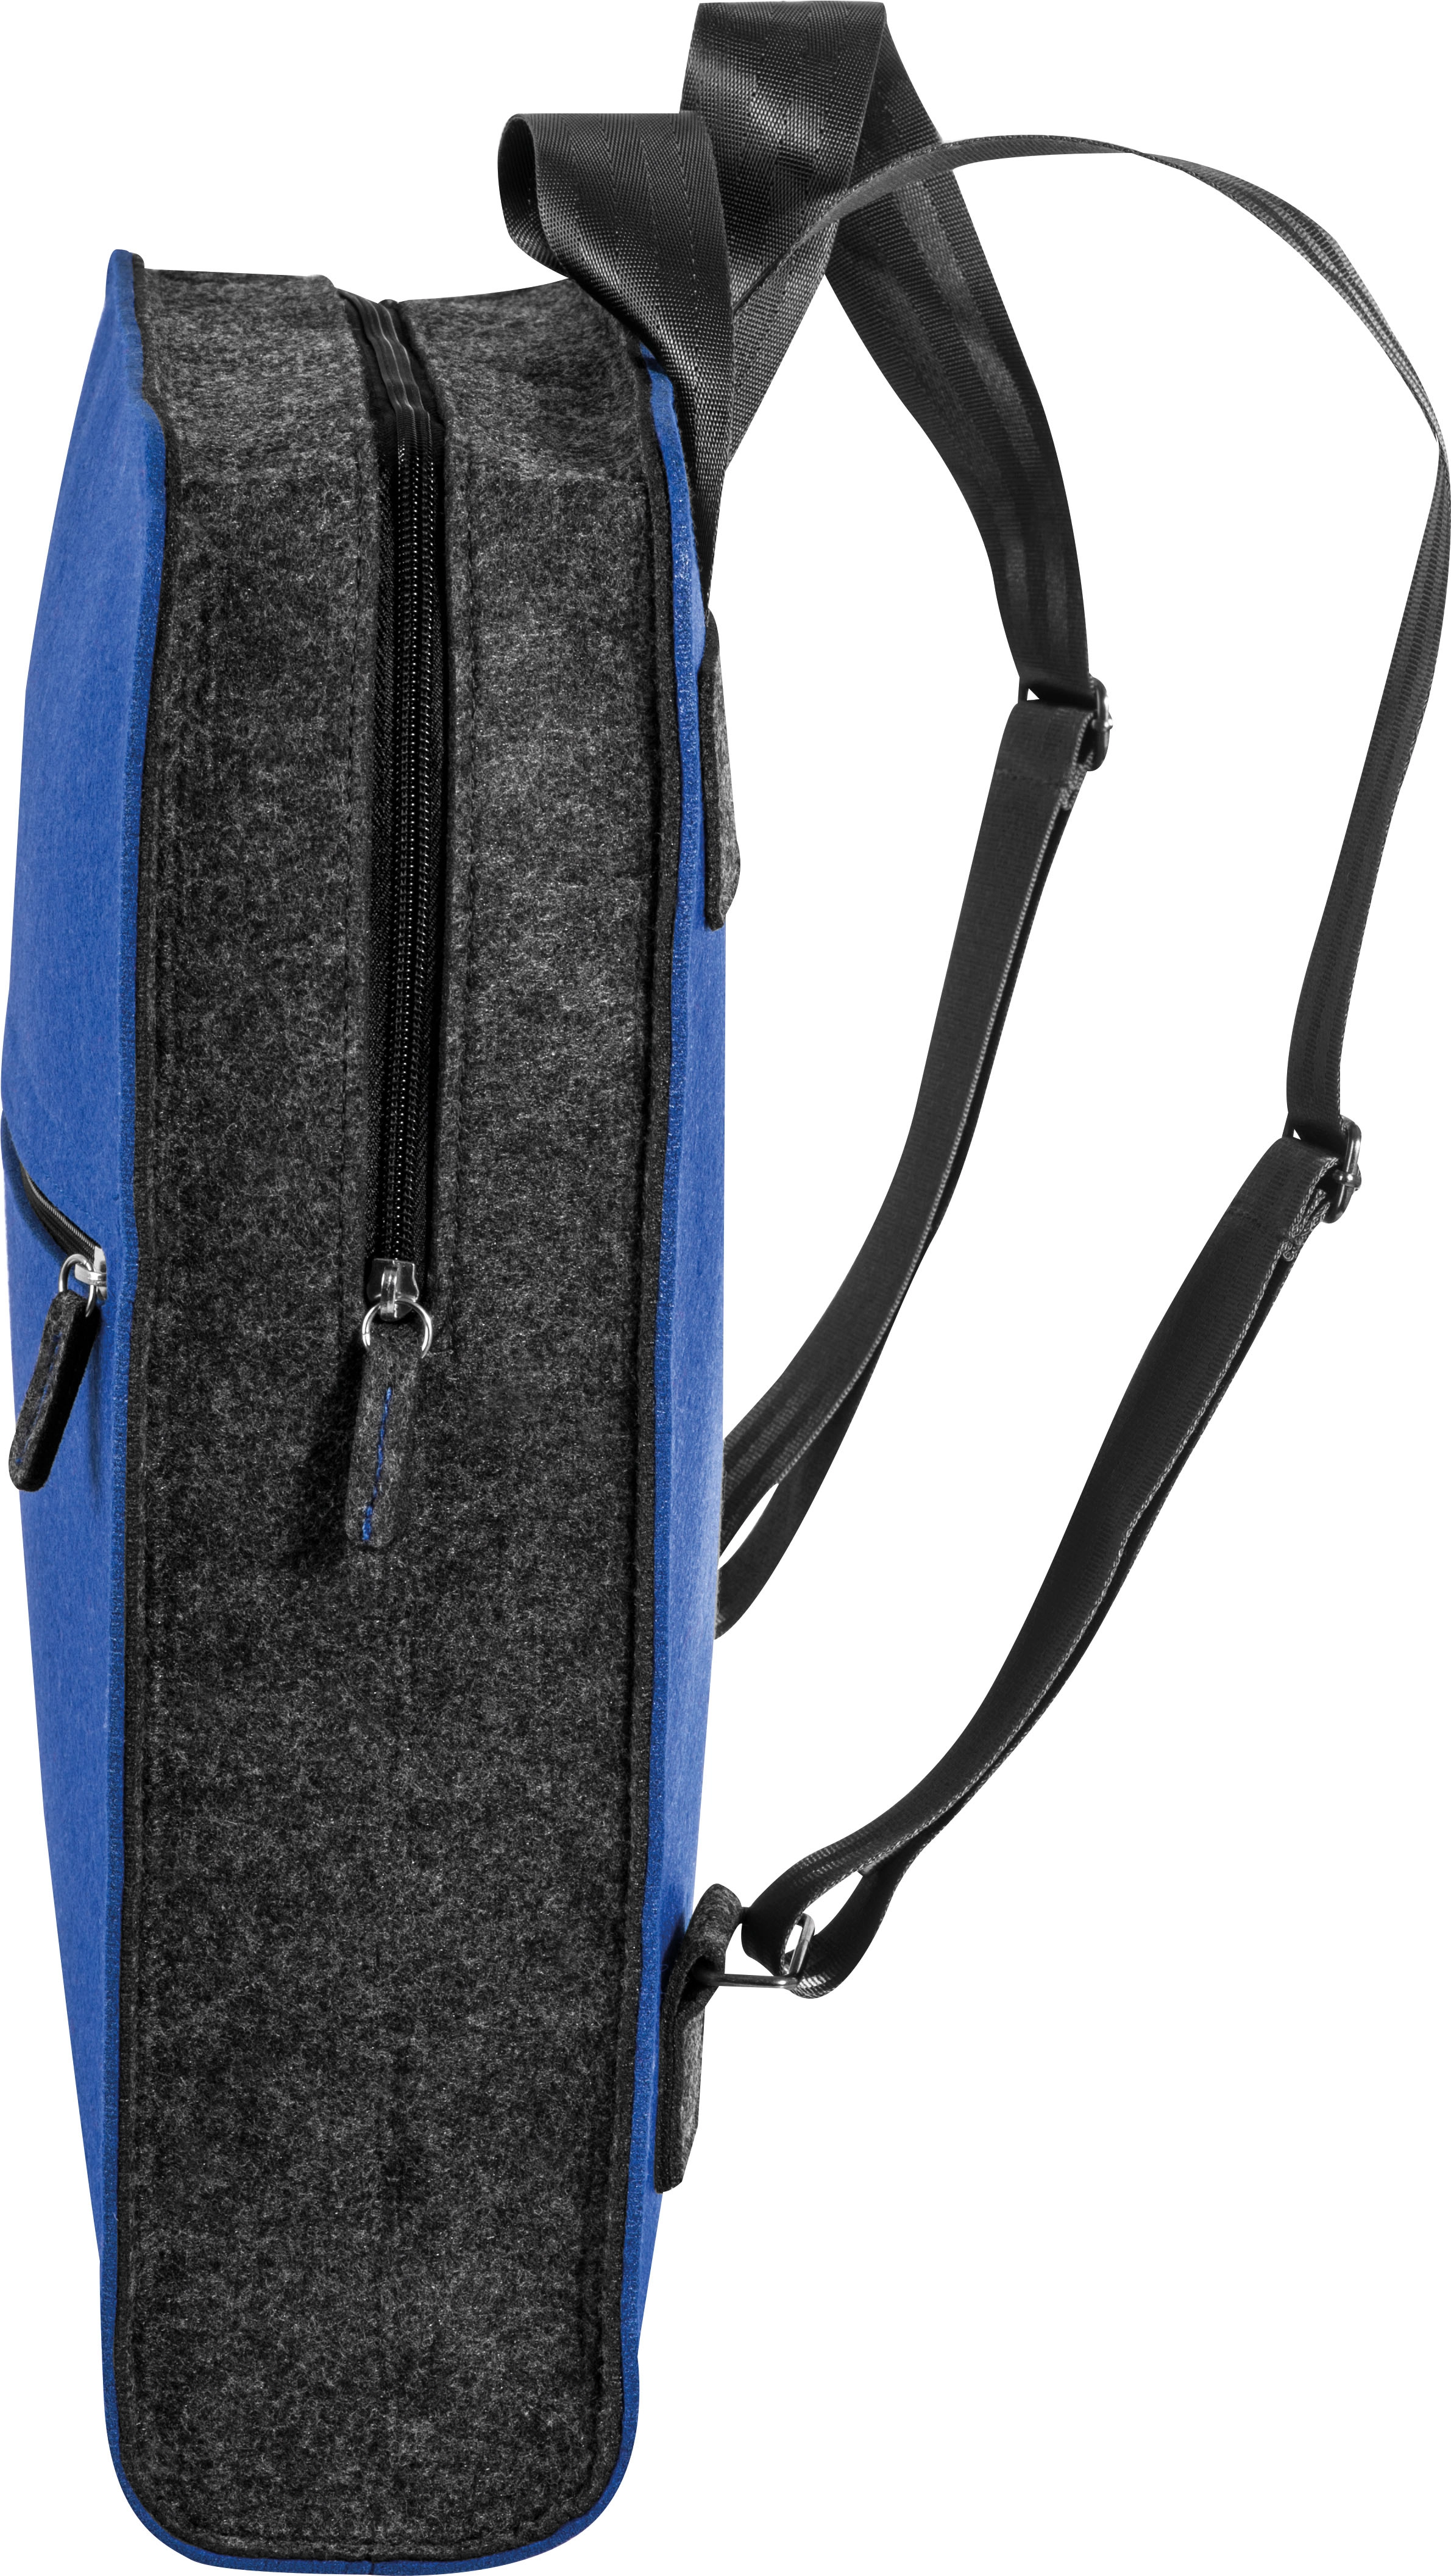 Plecak z filcu GM-60163-04 niebieski